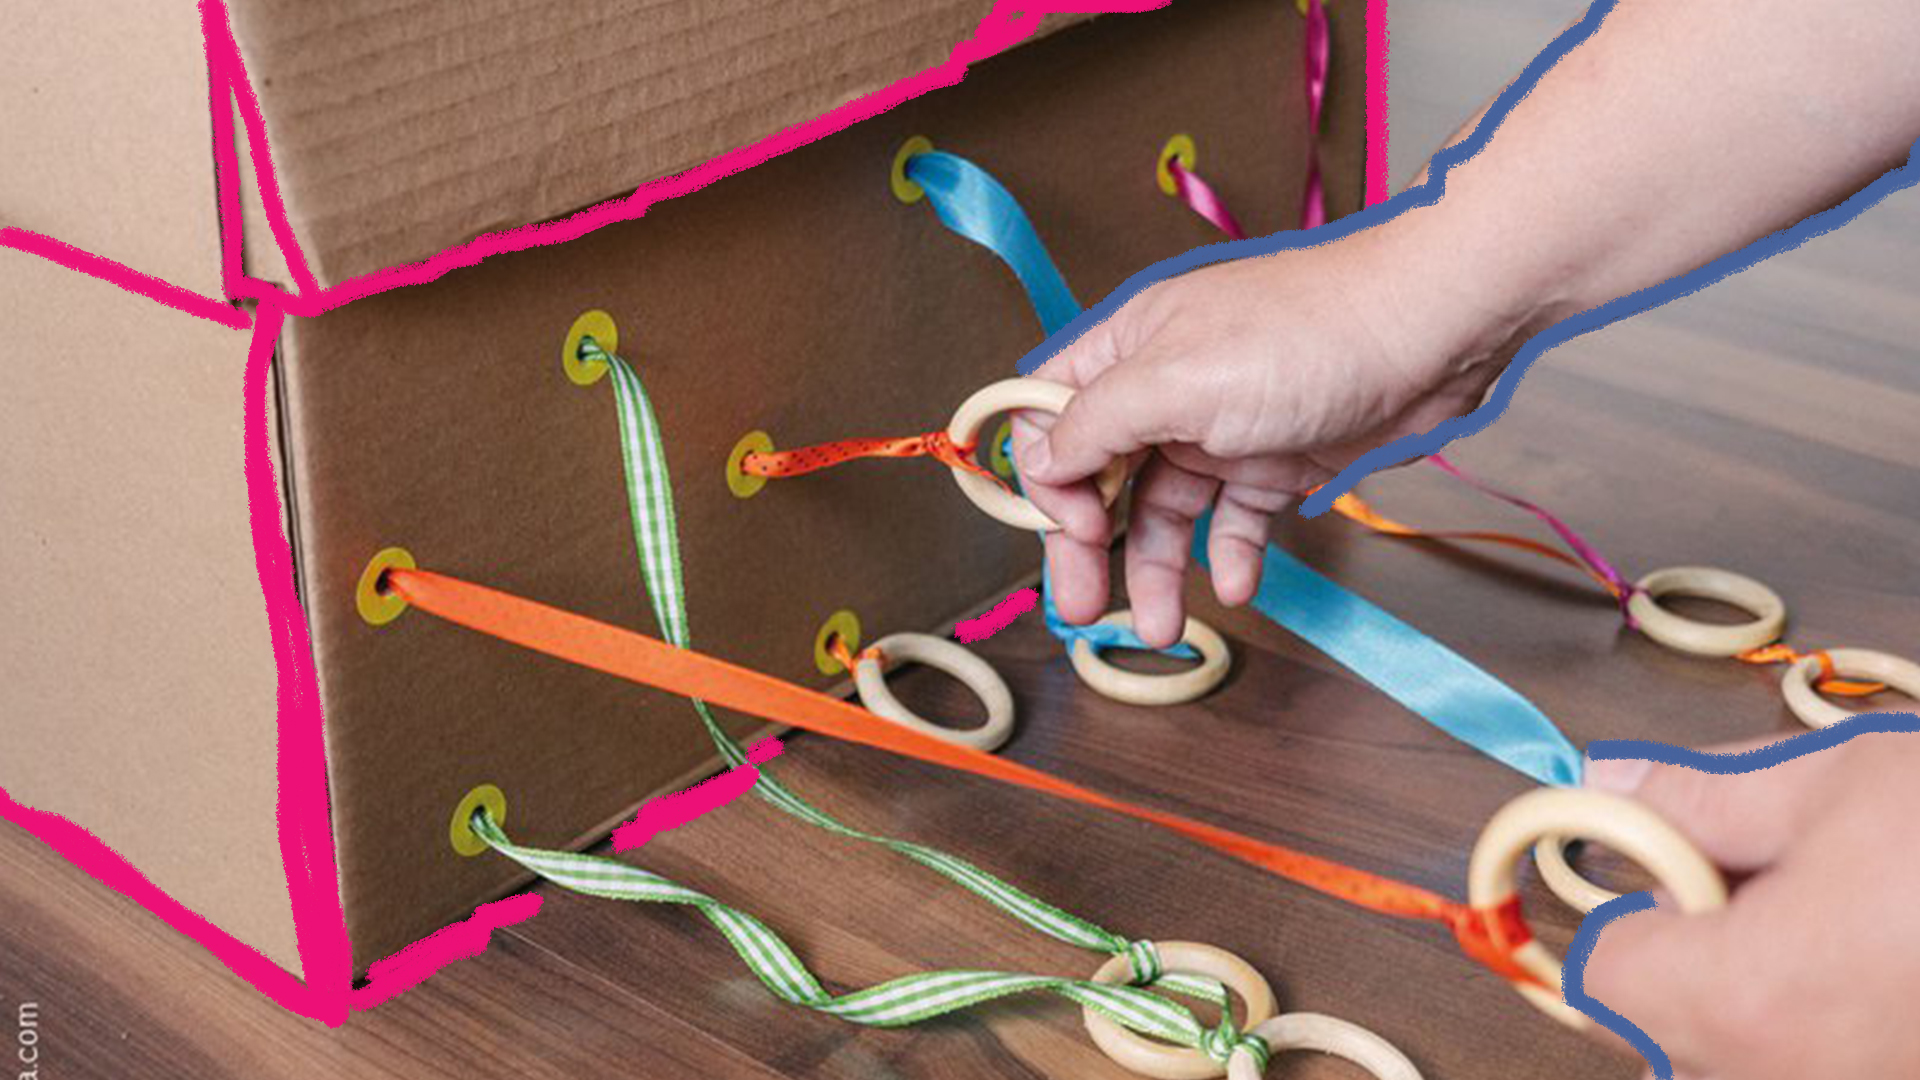 Caixas sensoriais: foto de mão de criança puxa fitas coloridas, que saem de uma "caixa sensorial".